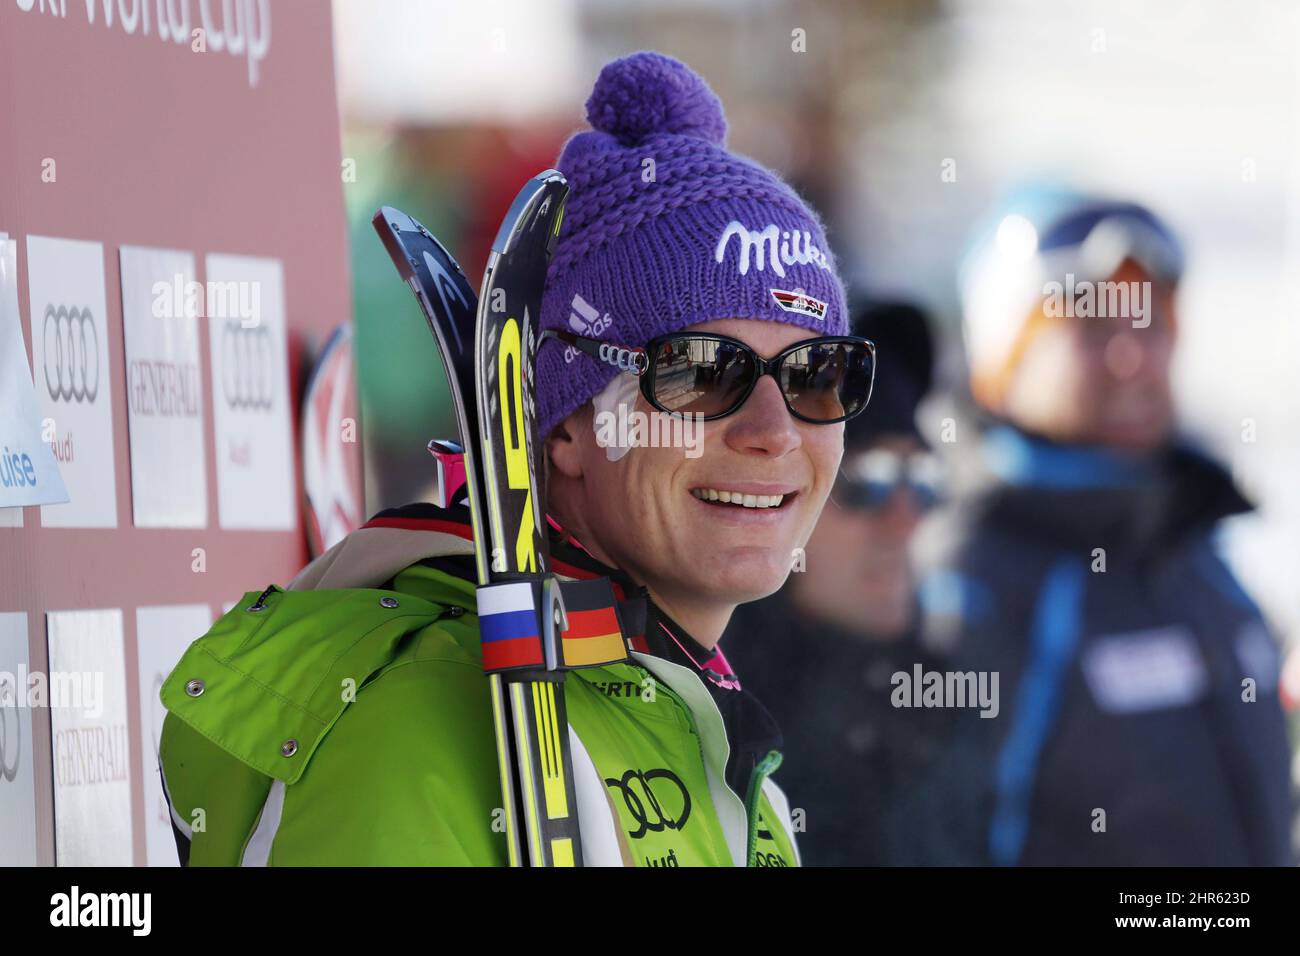 Maria Hoefl-Riesch, d'Allemagne, réagit dans la zone d'arrivée après sa course à la coupe du monde féminine de ski alpin à Lake Louise, en Alberta, le samedi 7 décembre 2013. LA PRESSE CANADIENNE/Jeff McIntosh Banque D'Images